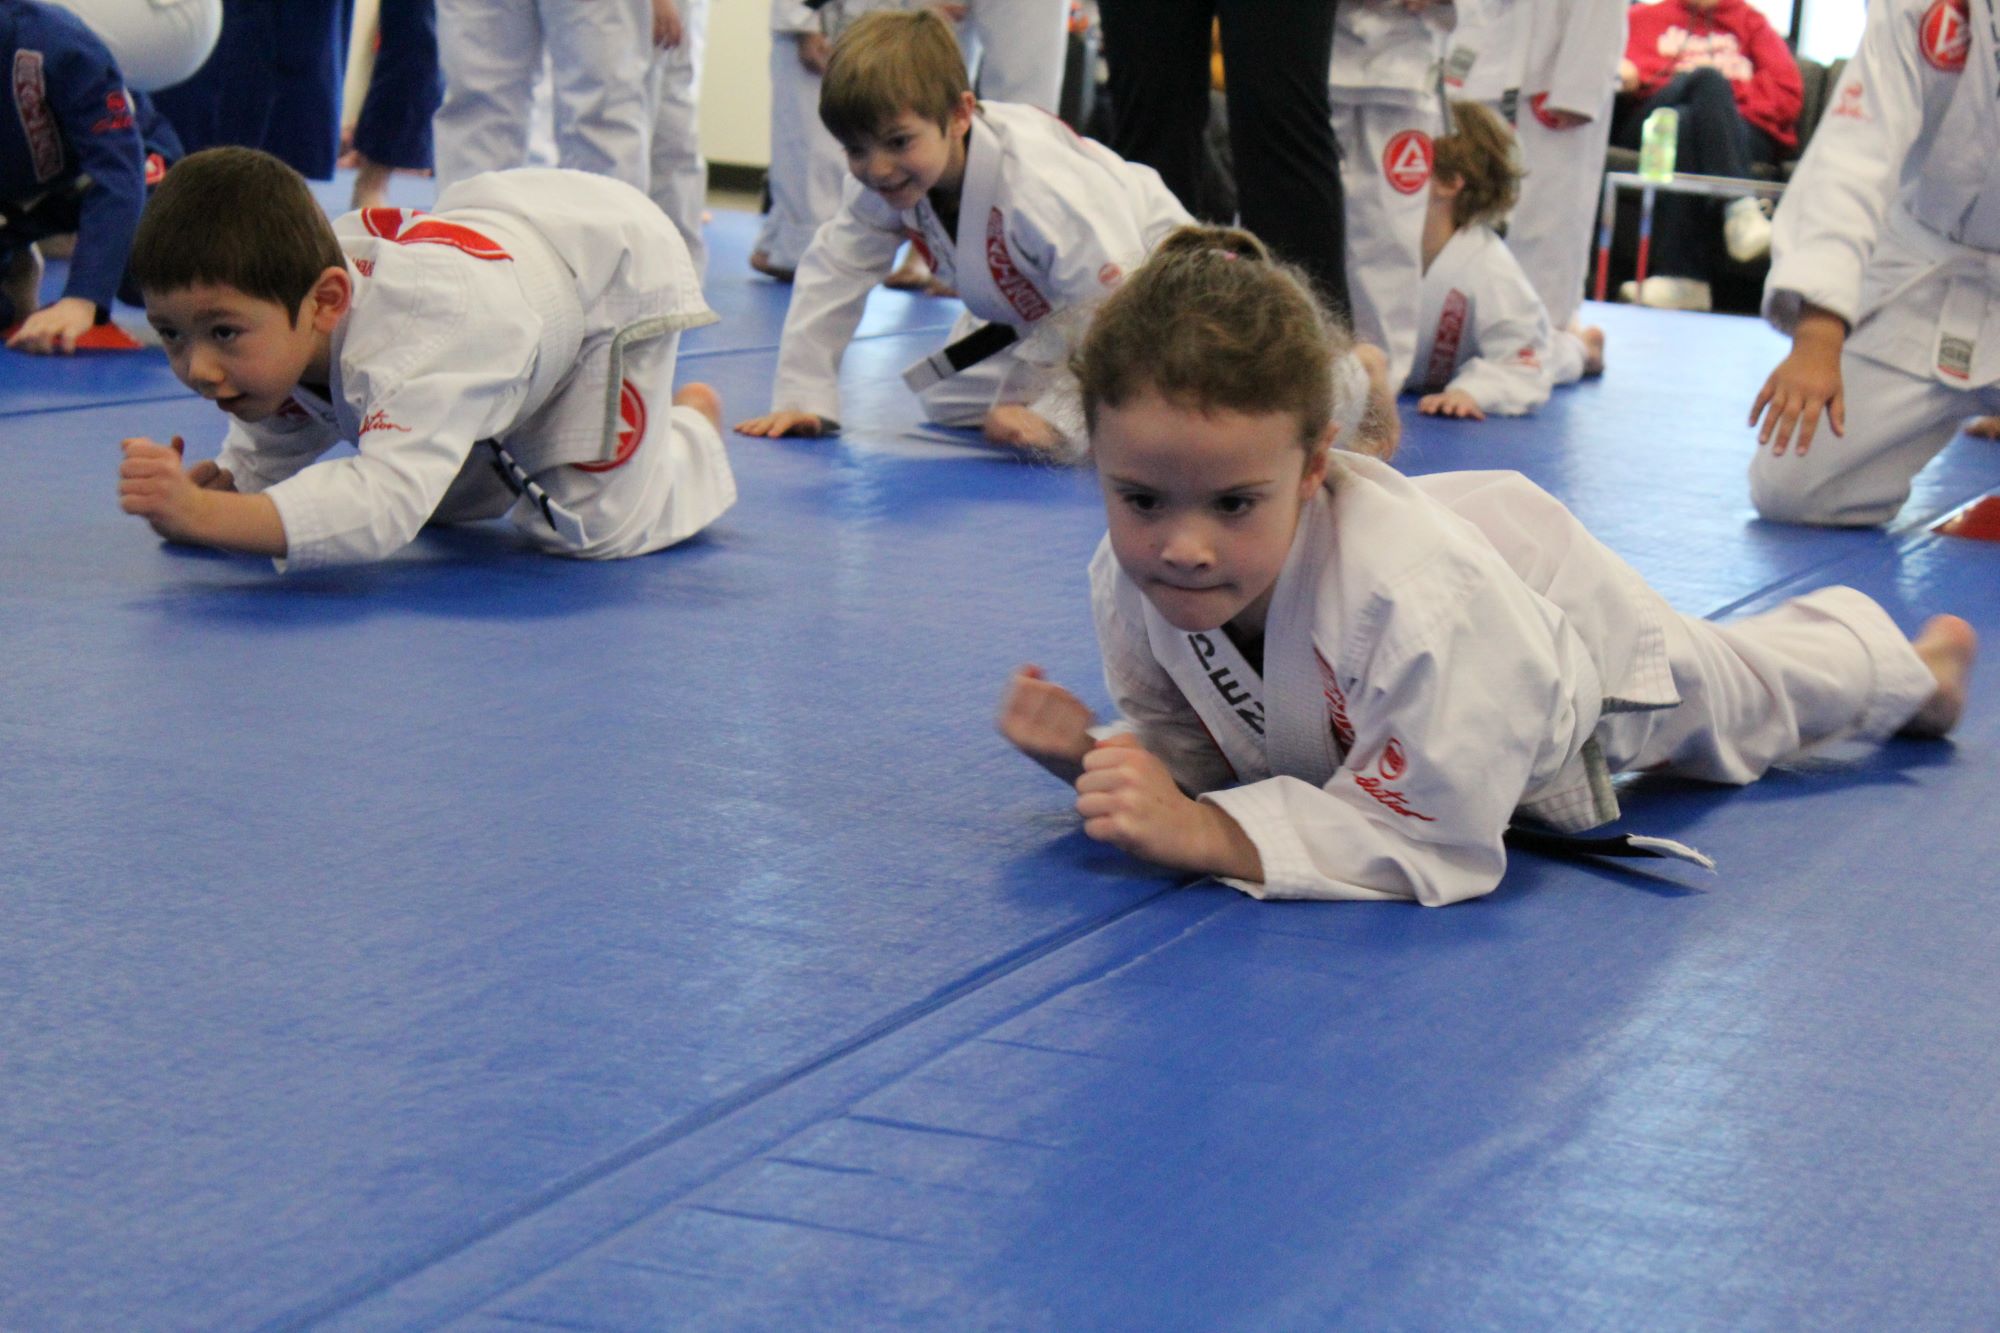 Kids Martial Arts Craig, KS | Craig, KS martial arts classes for kids | Gracie Barra Overland Park